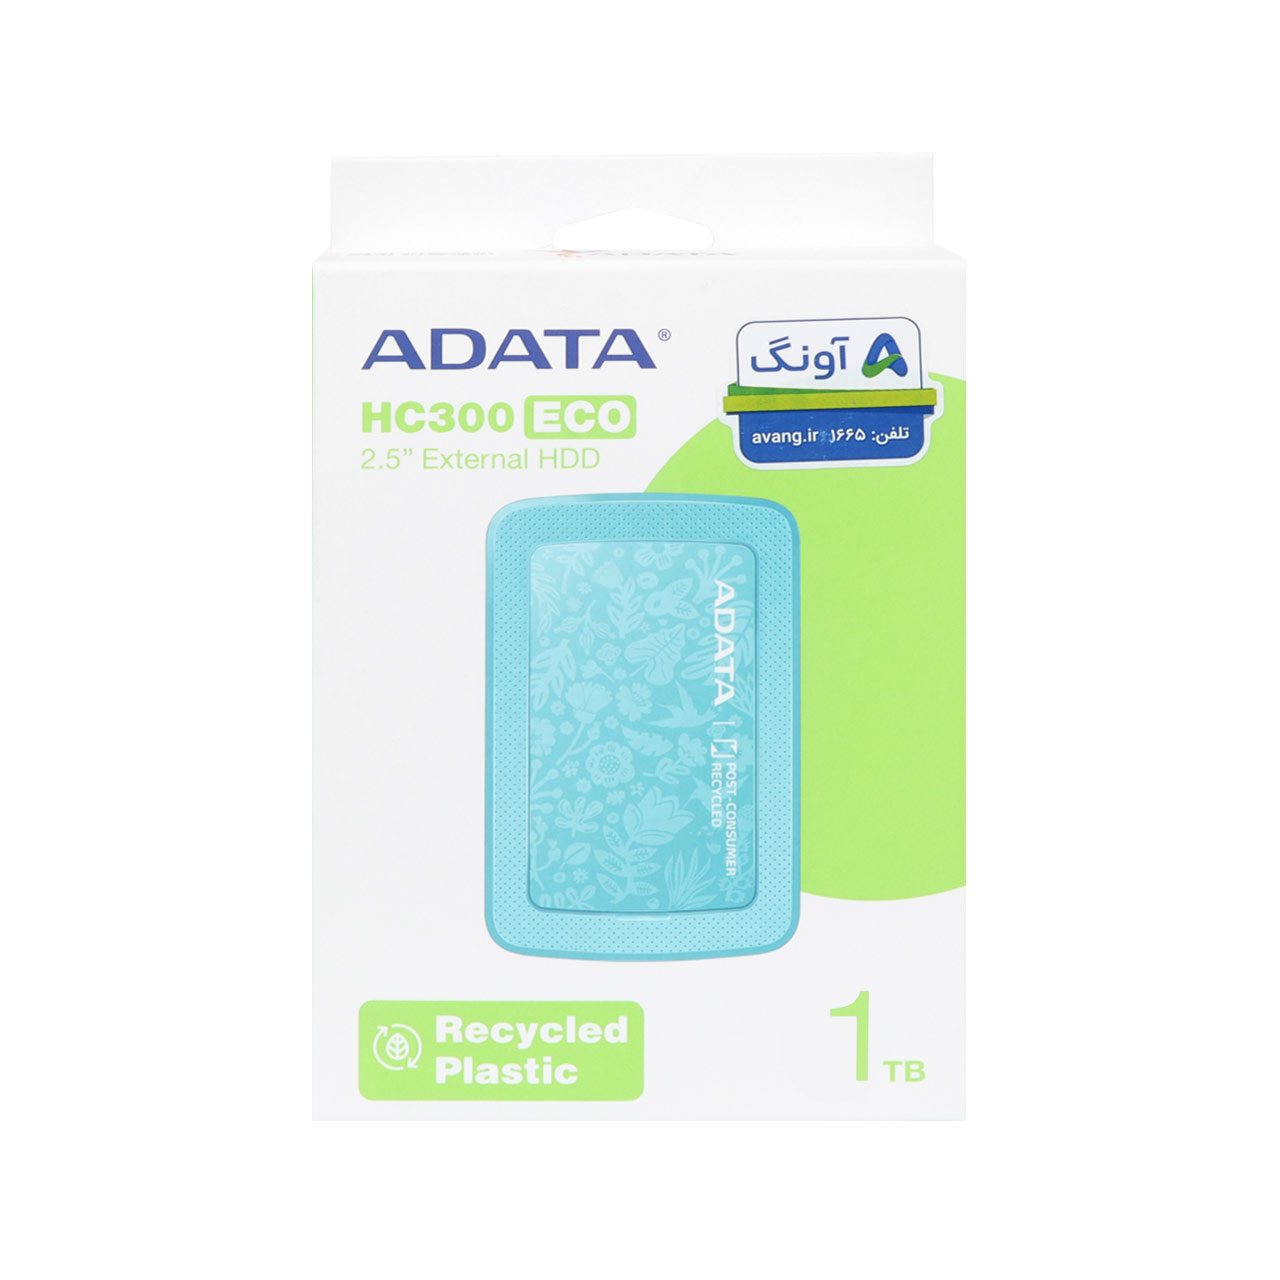 هارد اکسترنال ADATA مدل HC300 ECO ظرفیت 1TB - سبز (گارانتی شرکت آونگ)